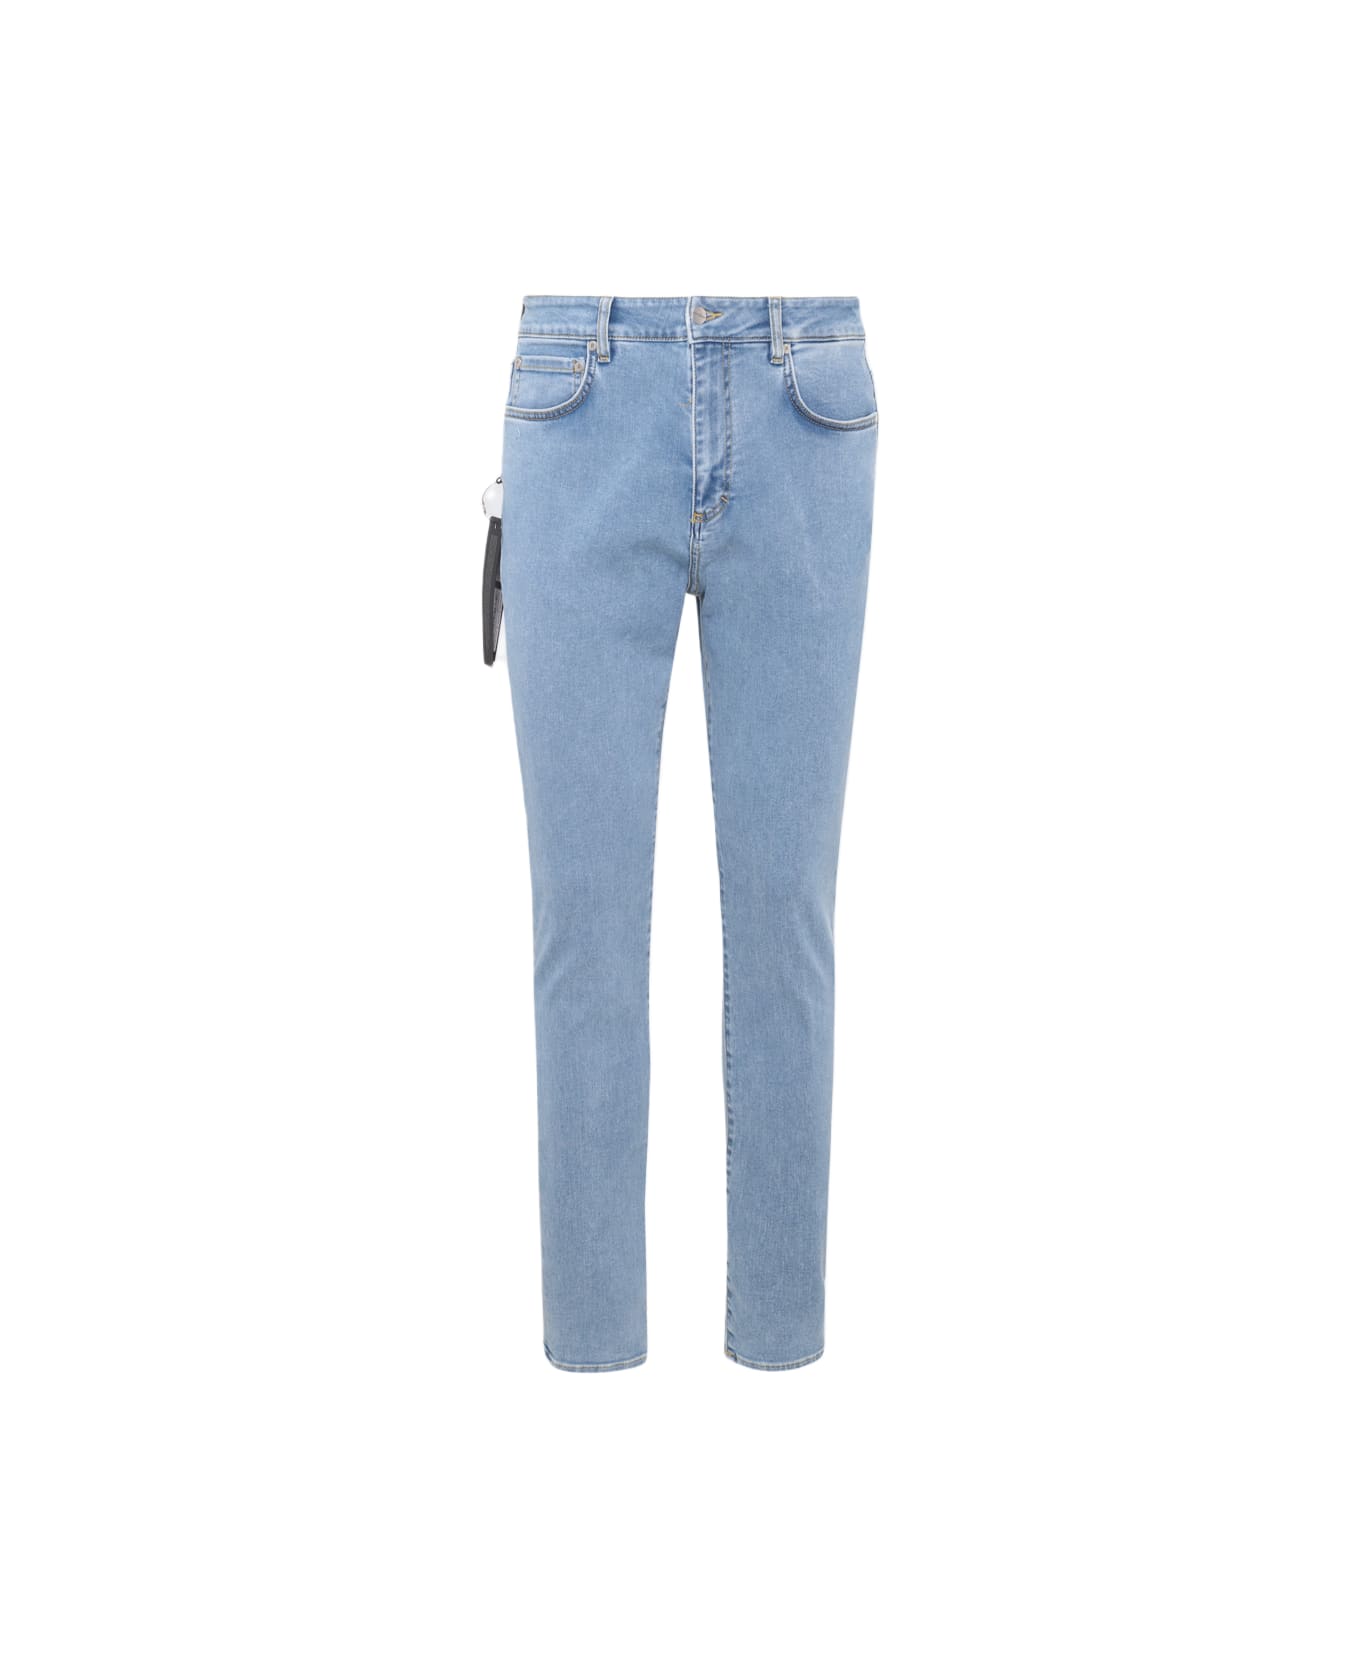 REPRESENT Soft Blue Cotton Denim Jeans - SOFT BLUE